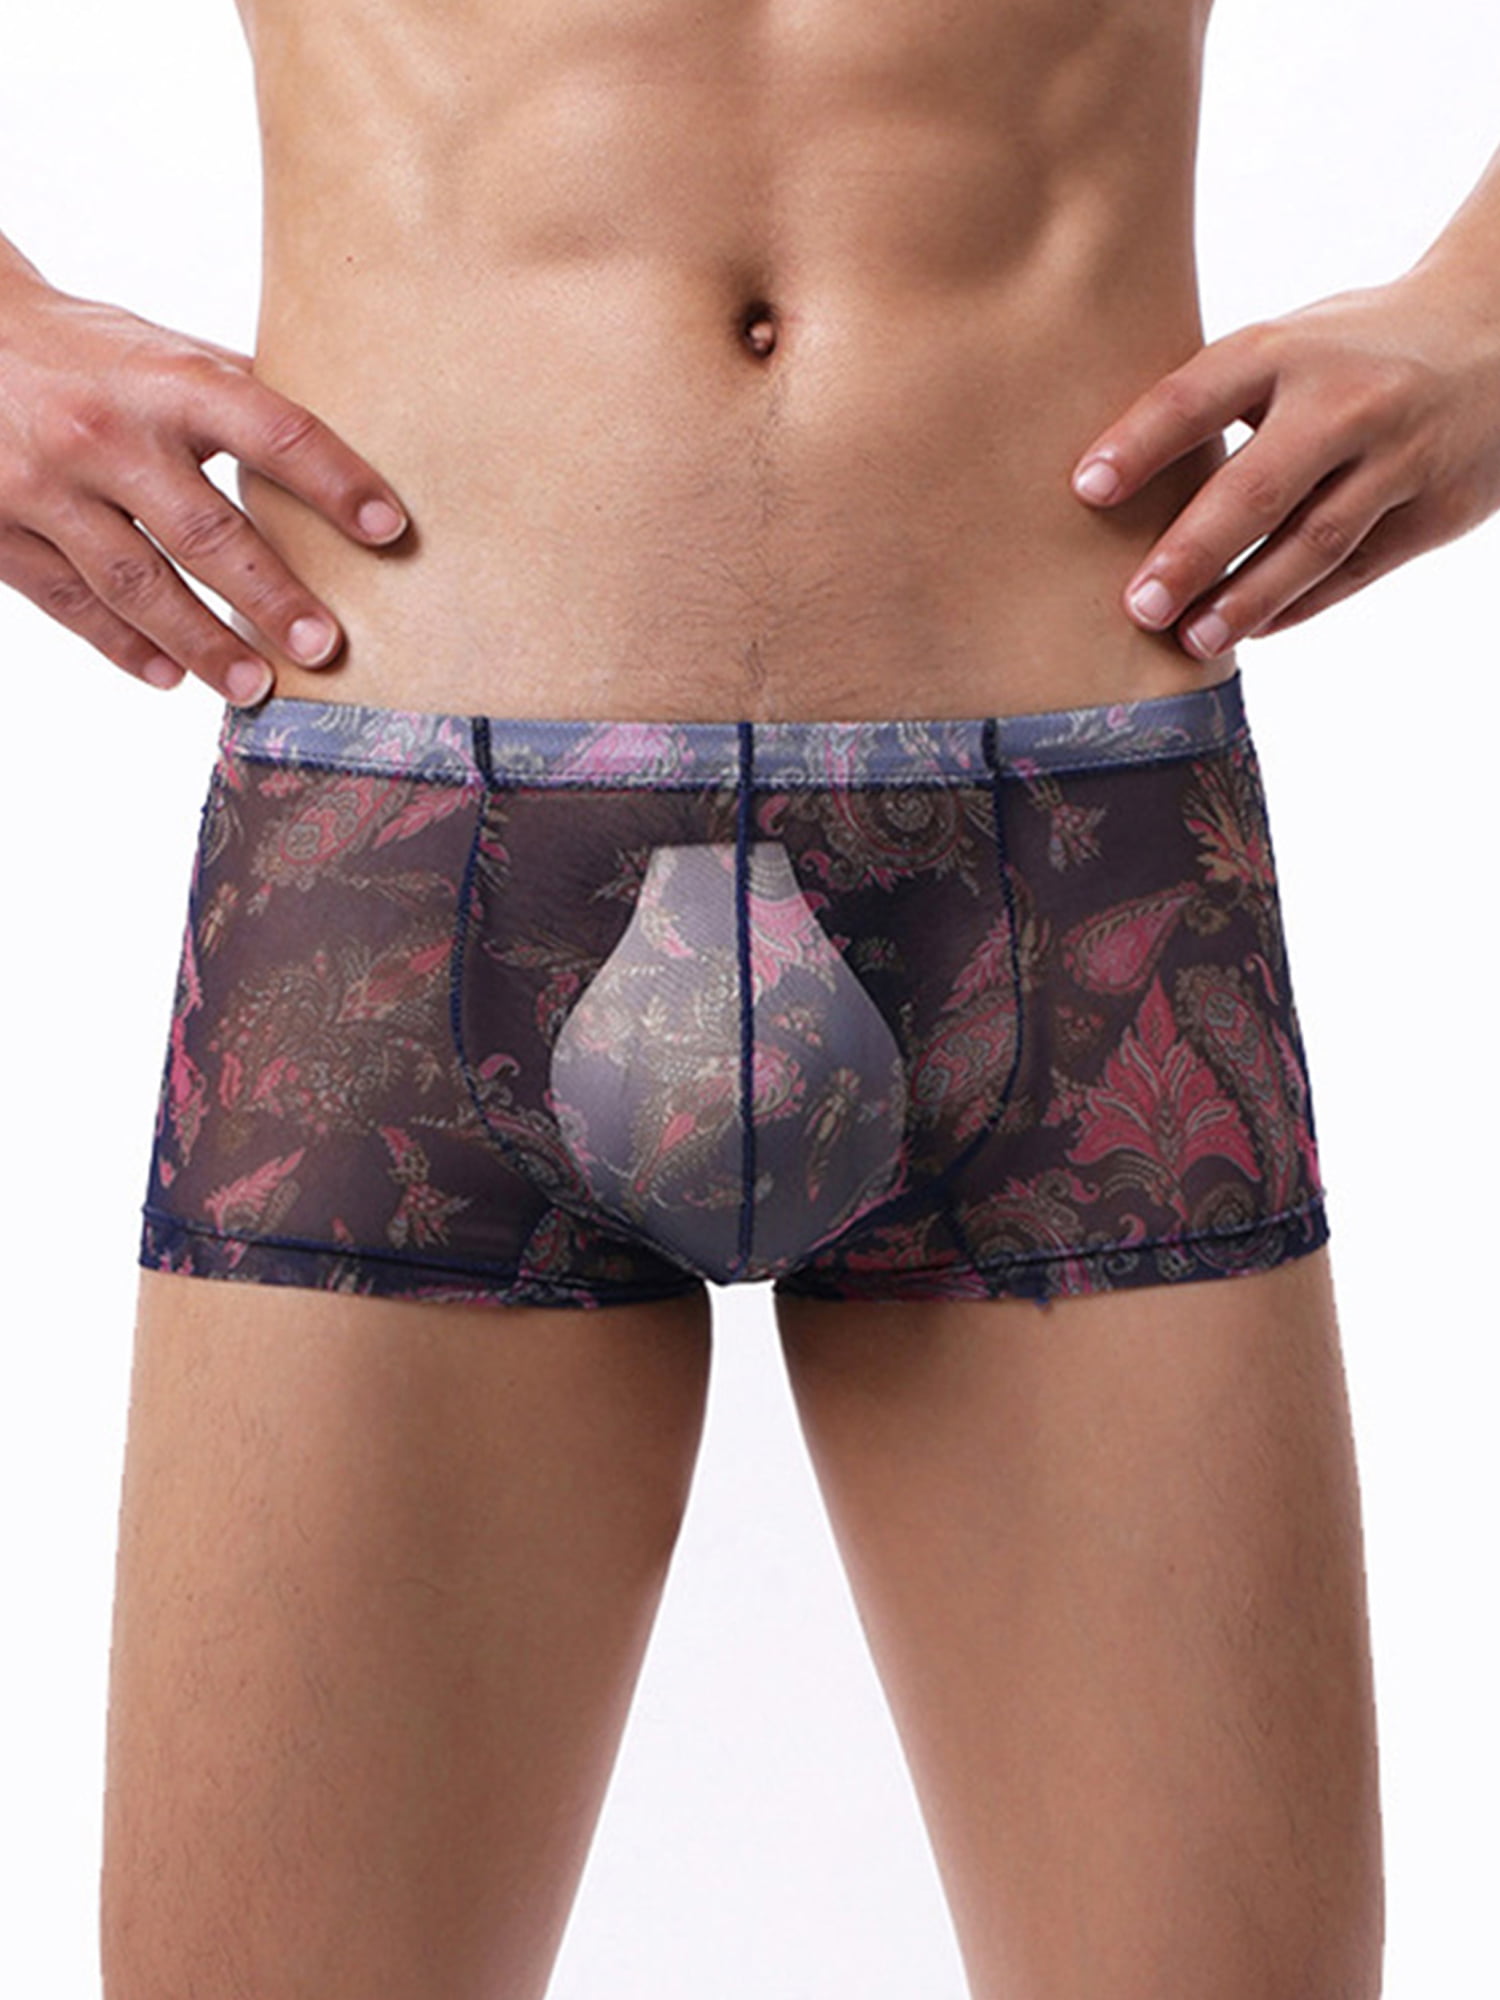 KAMAMEN Men's Sexy Briefs Mesh Sheer See Through Underwear